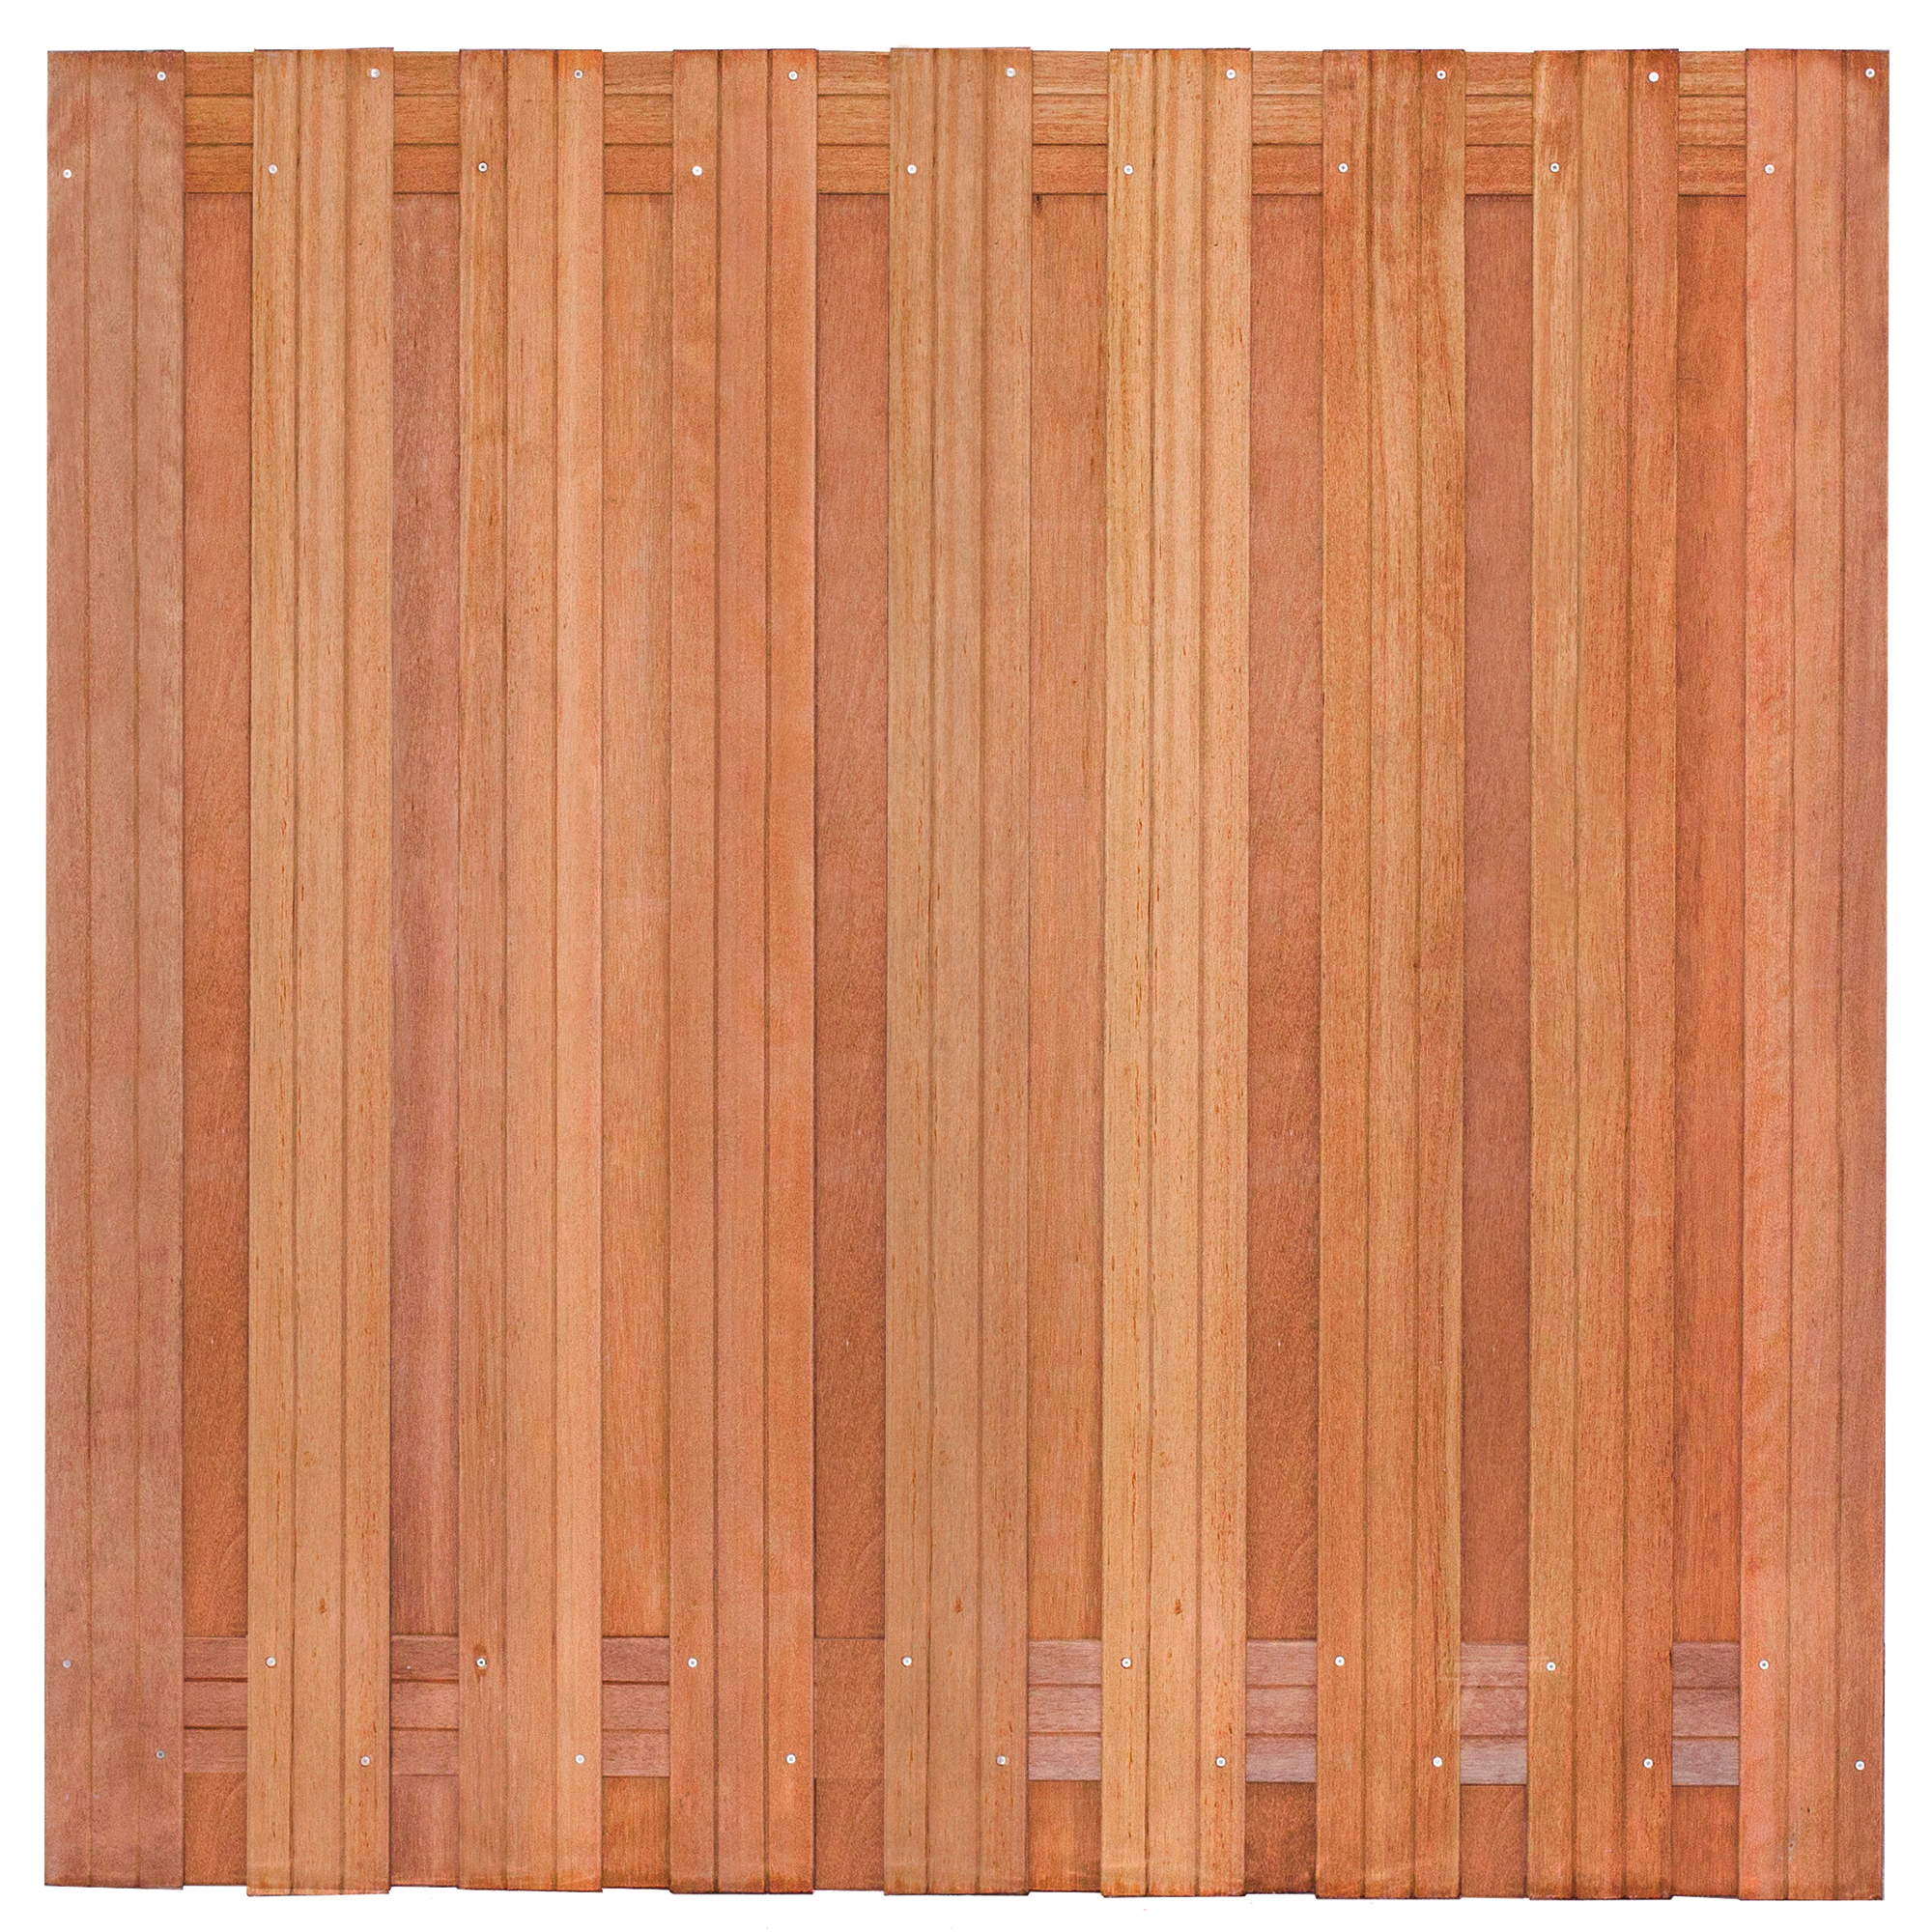 Tuinscherm hardhout kunstmatig gedroogd, 19-planks (17 + 2) Harlingen 180 x 180 cm